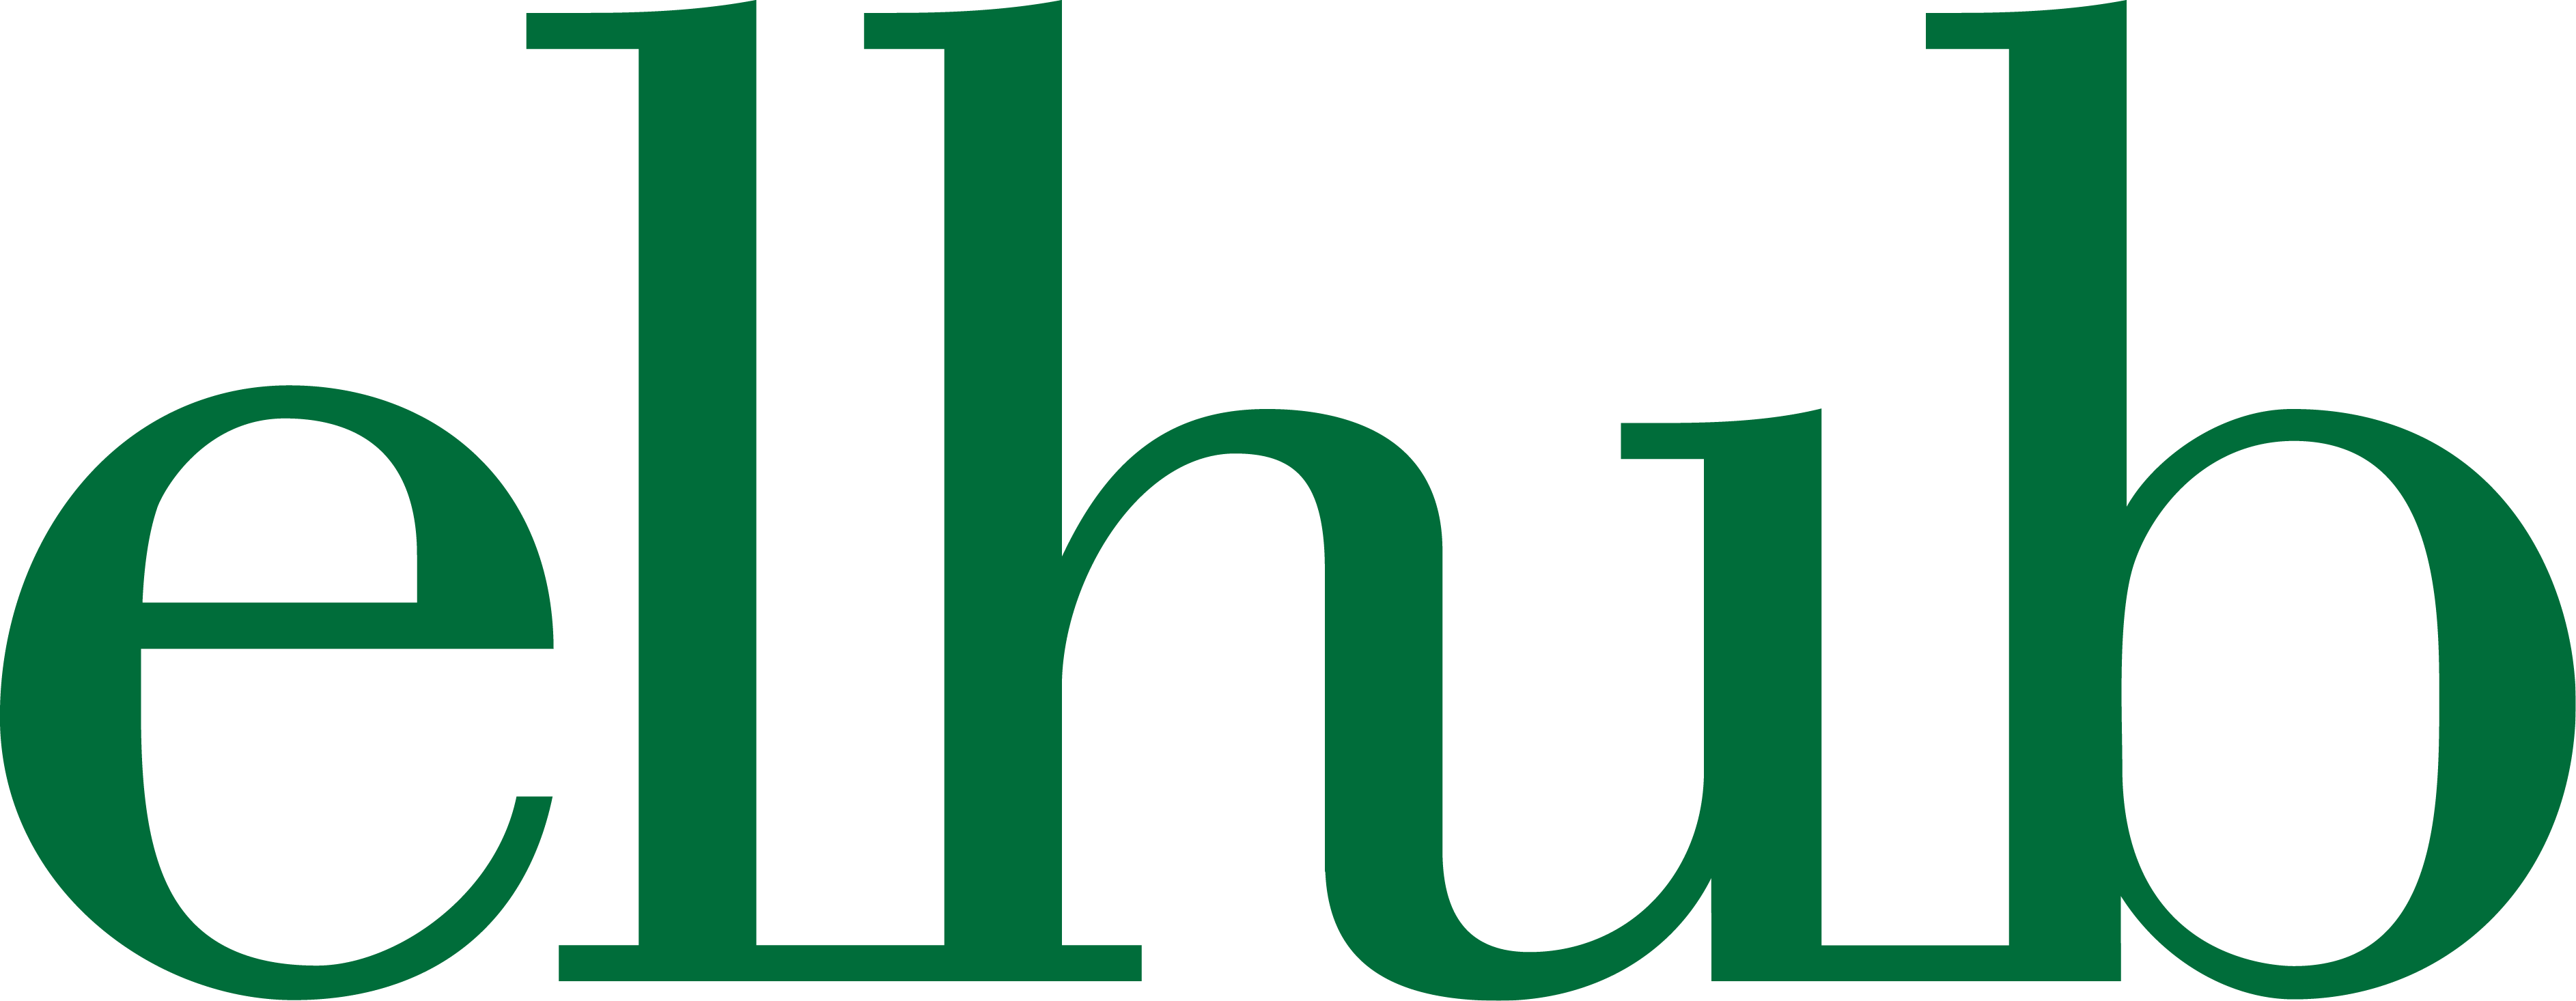 elhub-logo.png